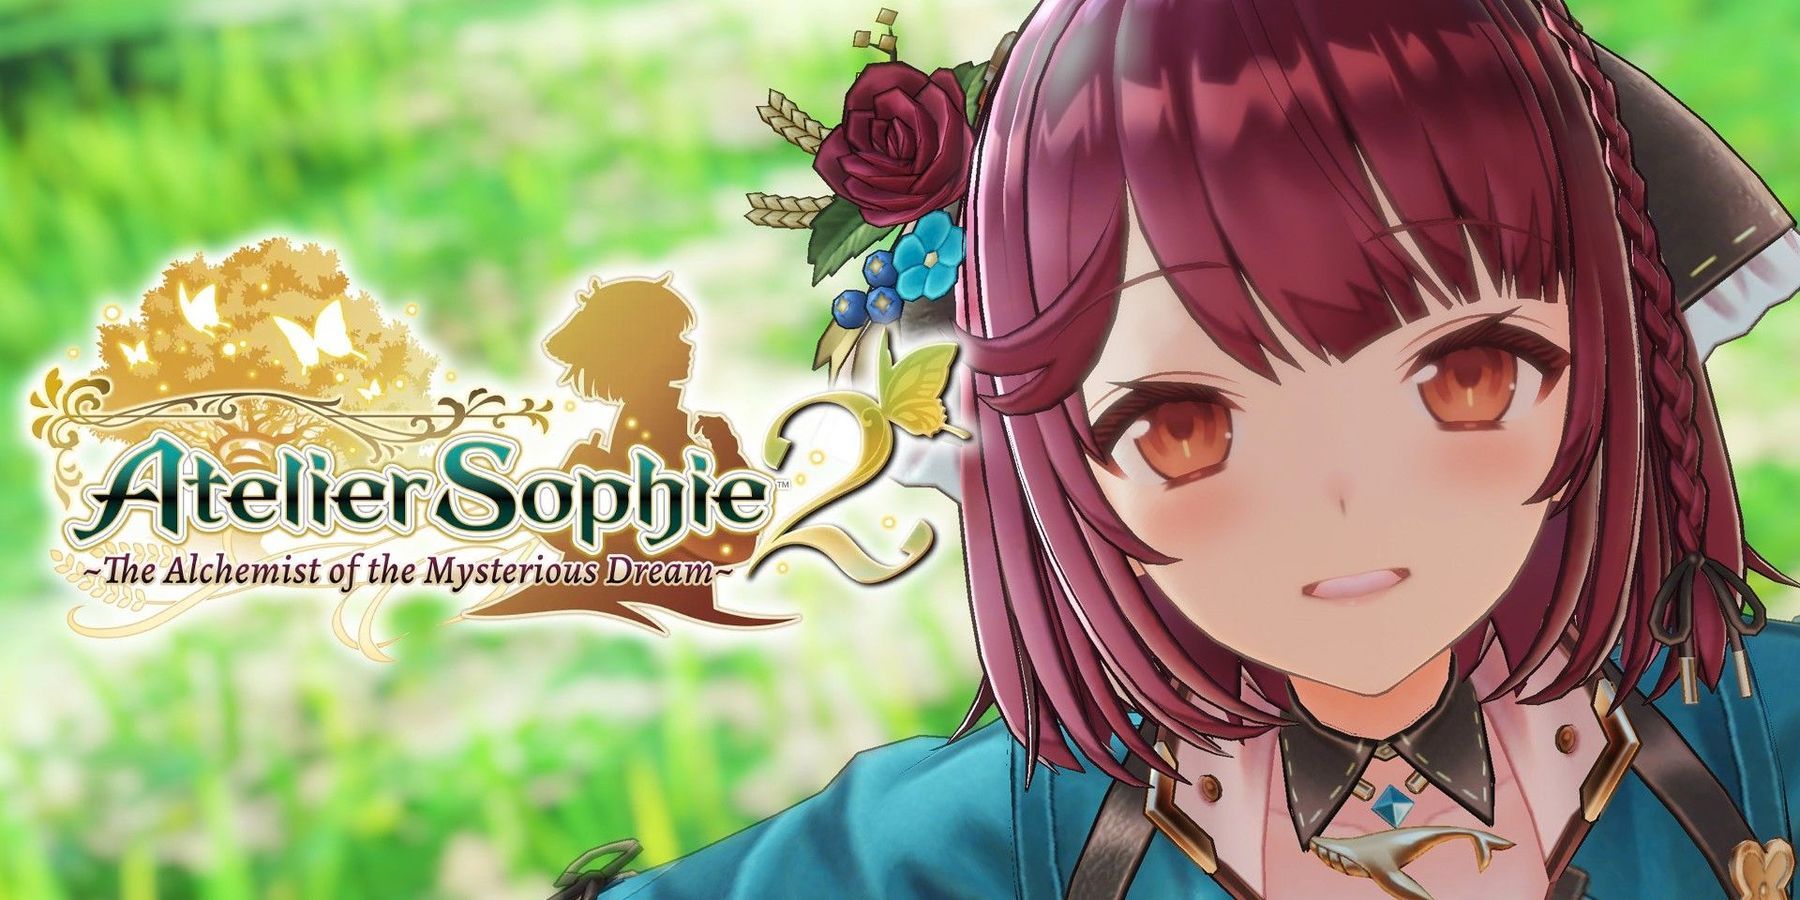 Atelier Sophie 2 oficialmente anunciado pela Koei Tecmo com lançamento em fevereiro de 2022